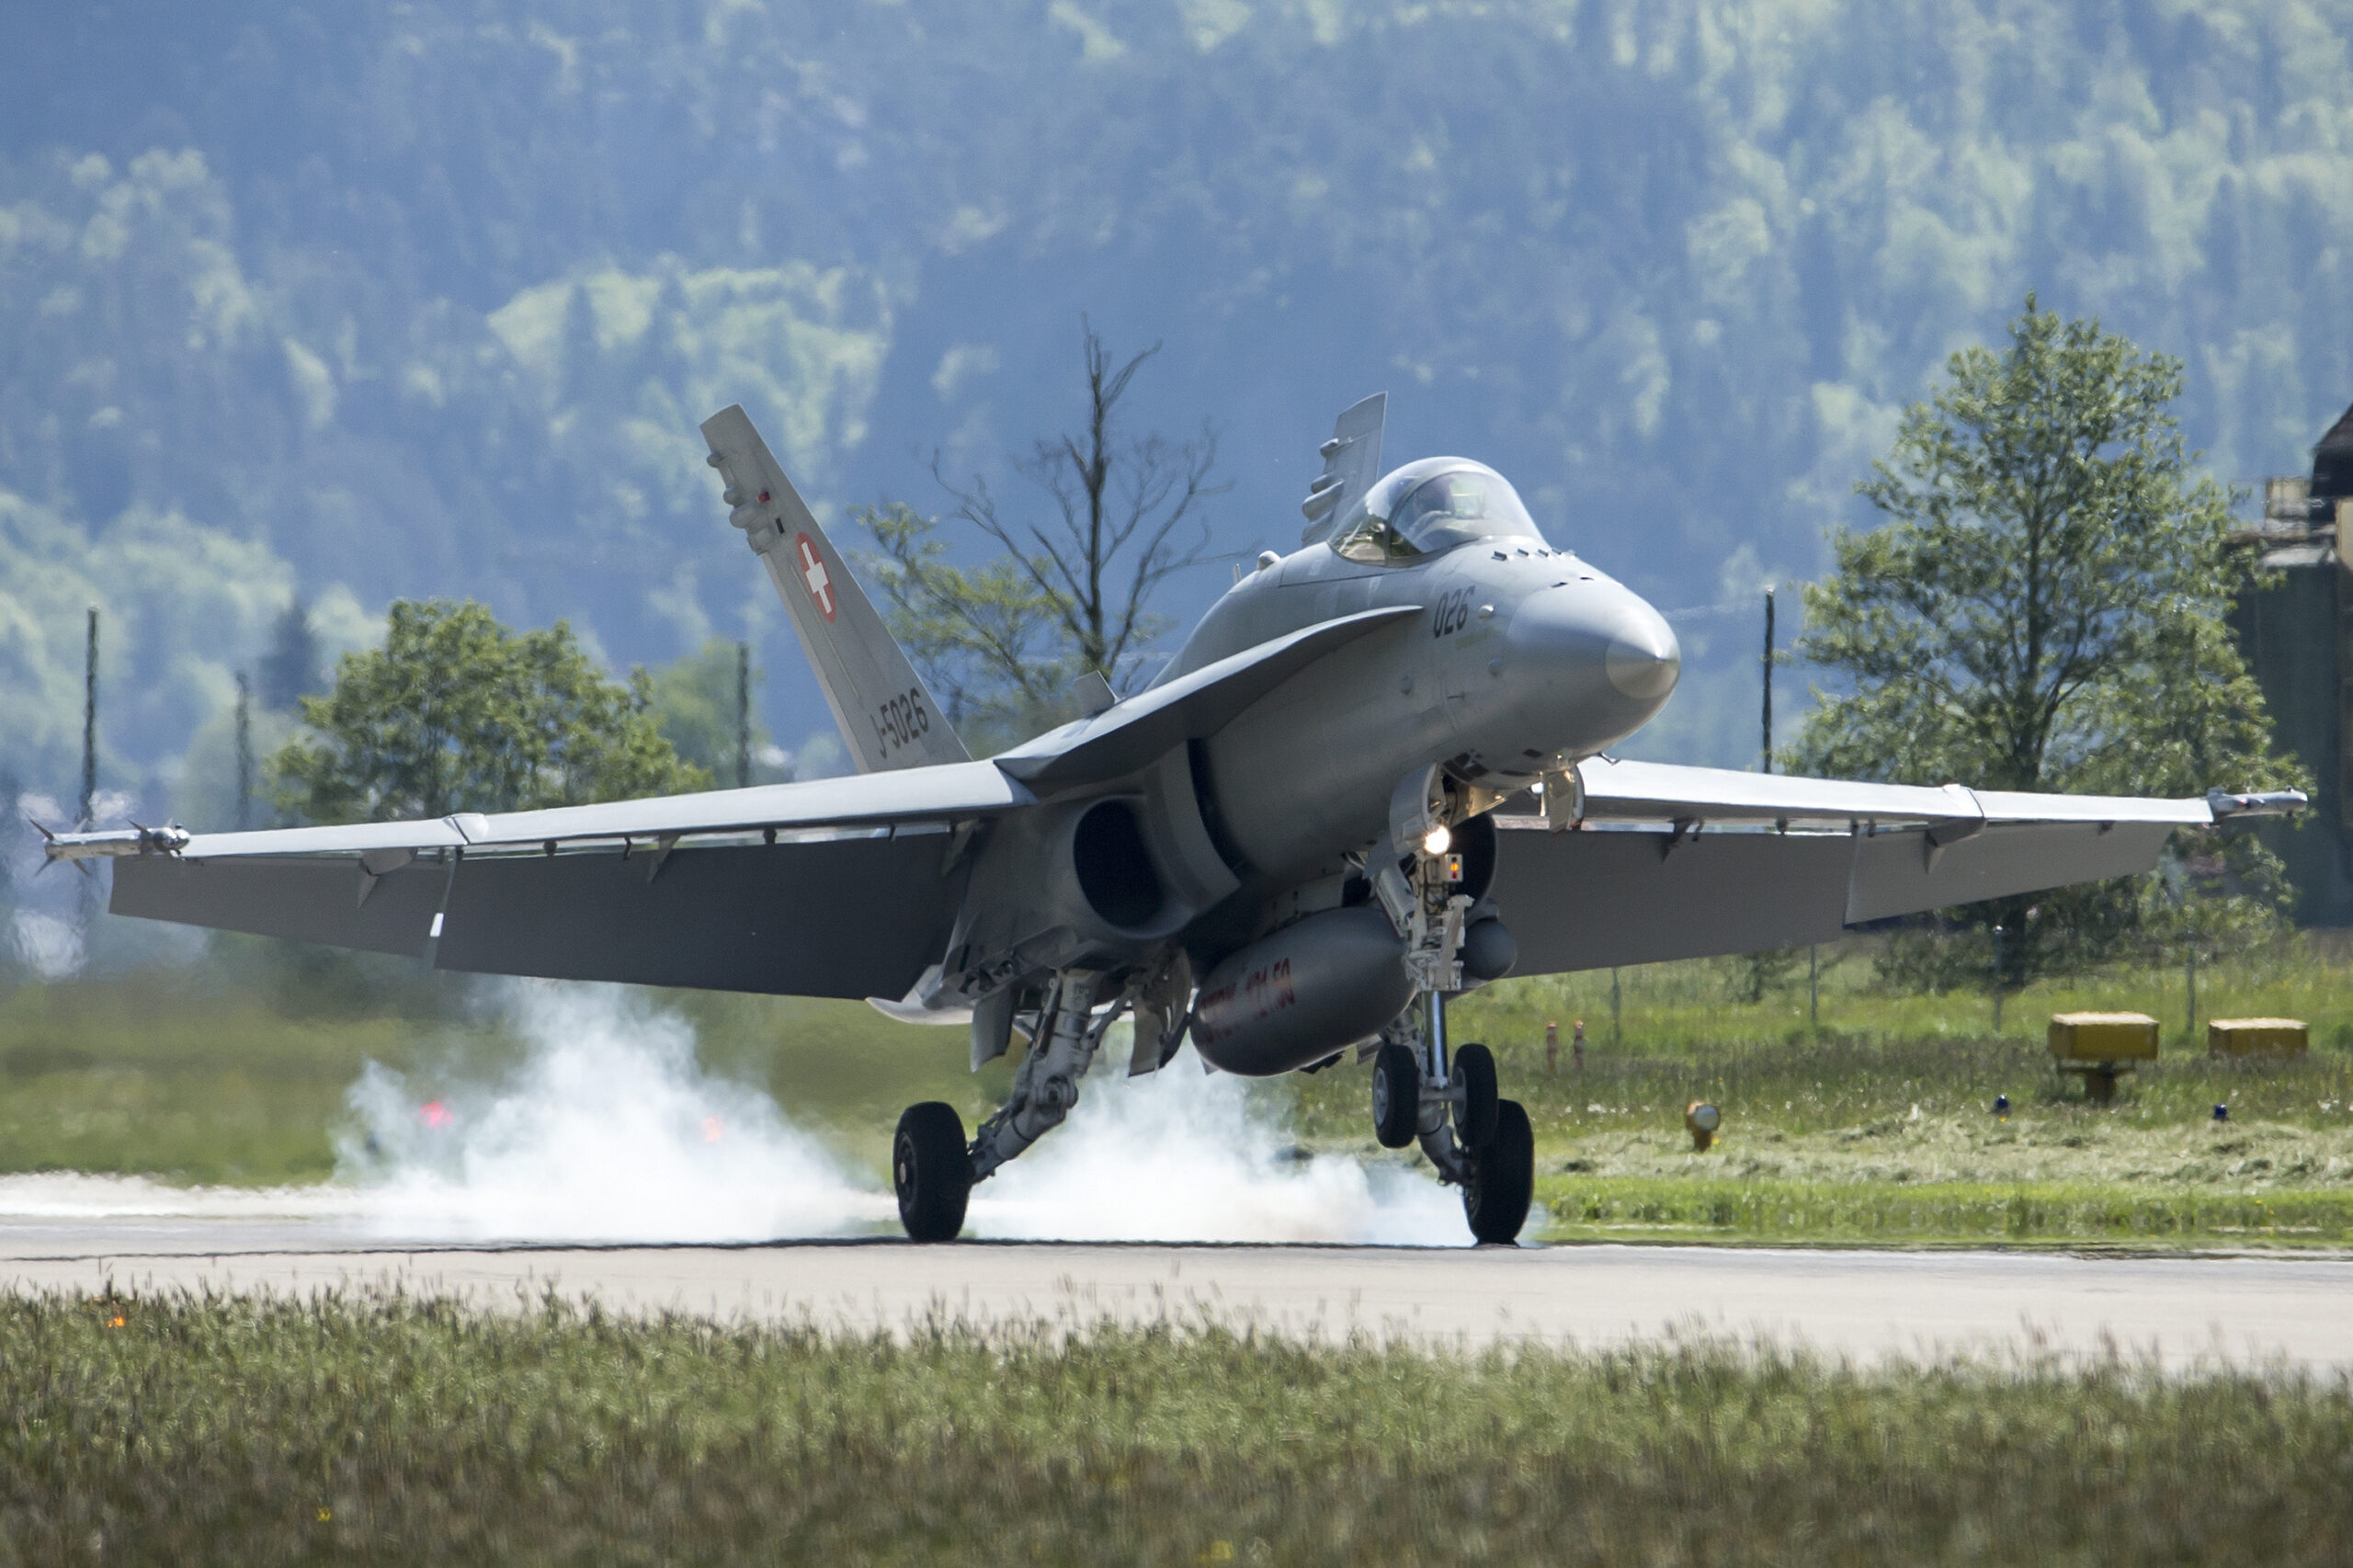 Ein Kampfflugzeug vom Typ F/A-18 Super Hornet der Schweizer Luftwaffe landet auf einem Militärflugplatz.